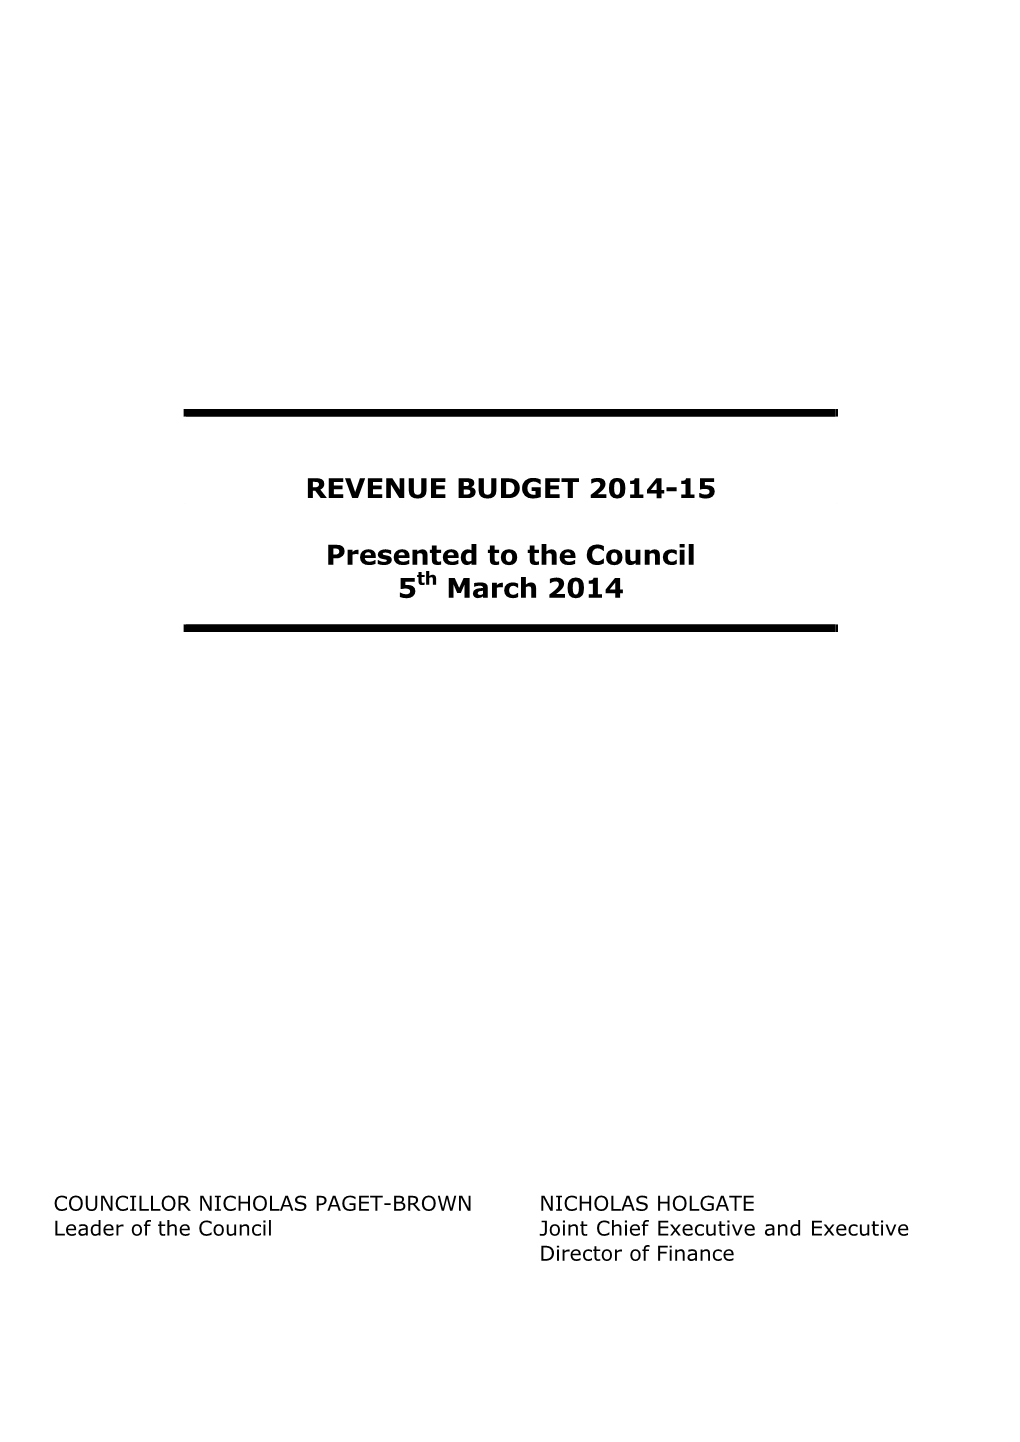 Revenue Budget 2014-15